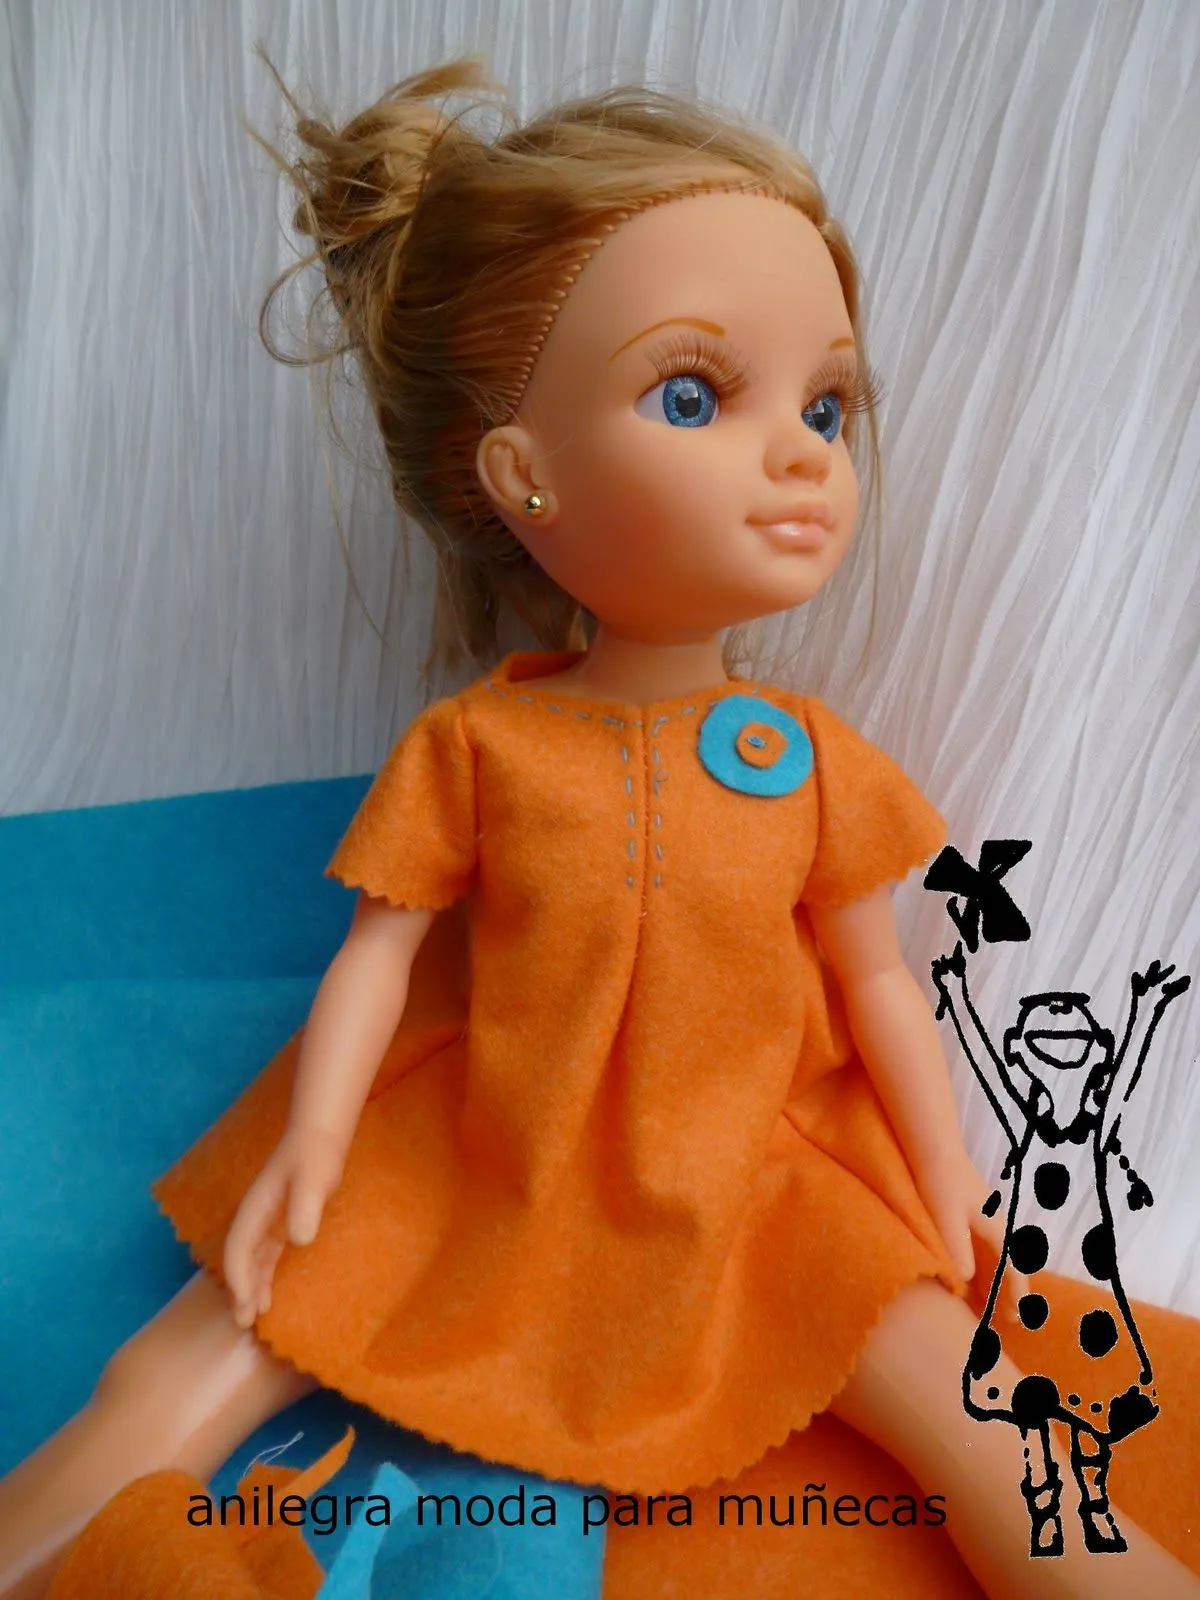 Anilegra moda para muñecas: Mis modelos y patrones para Nancy